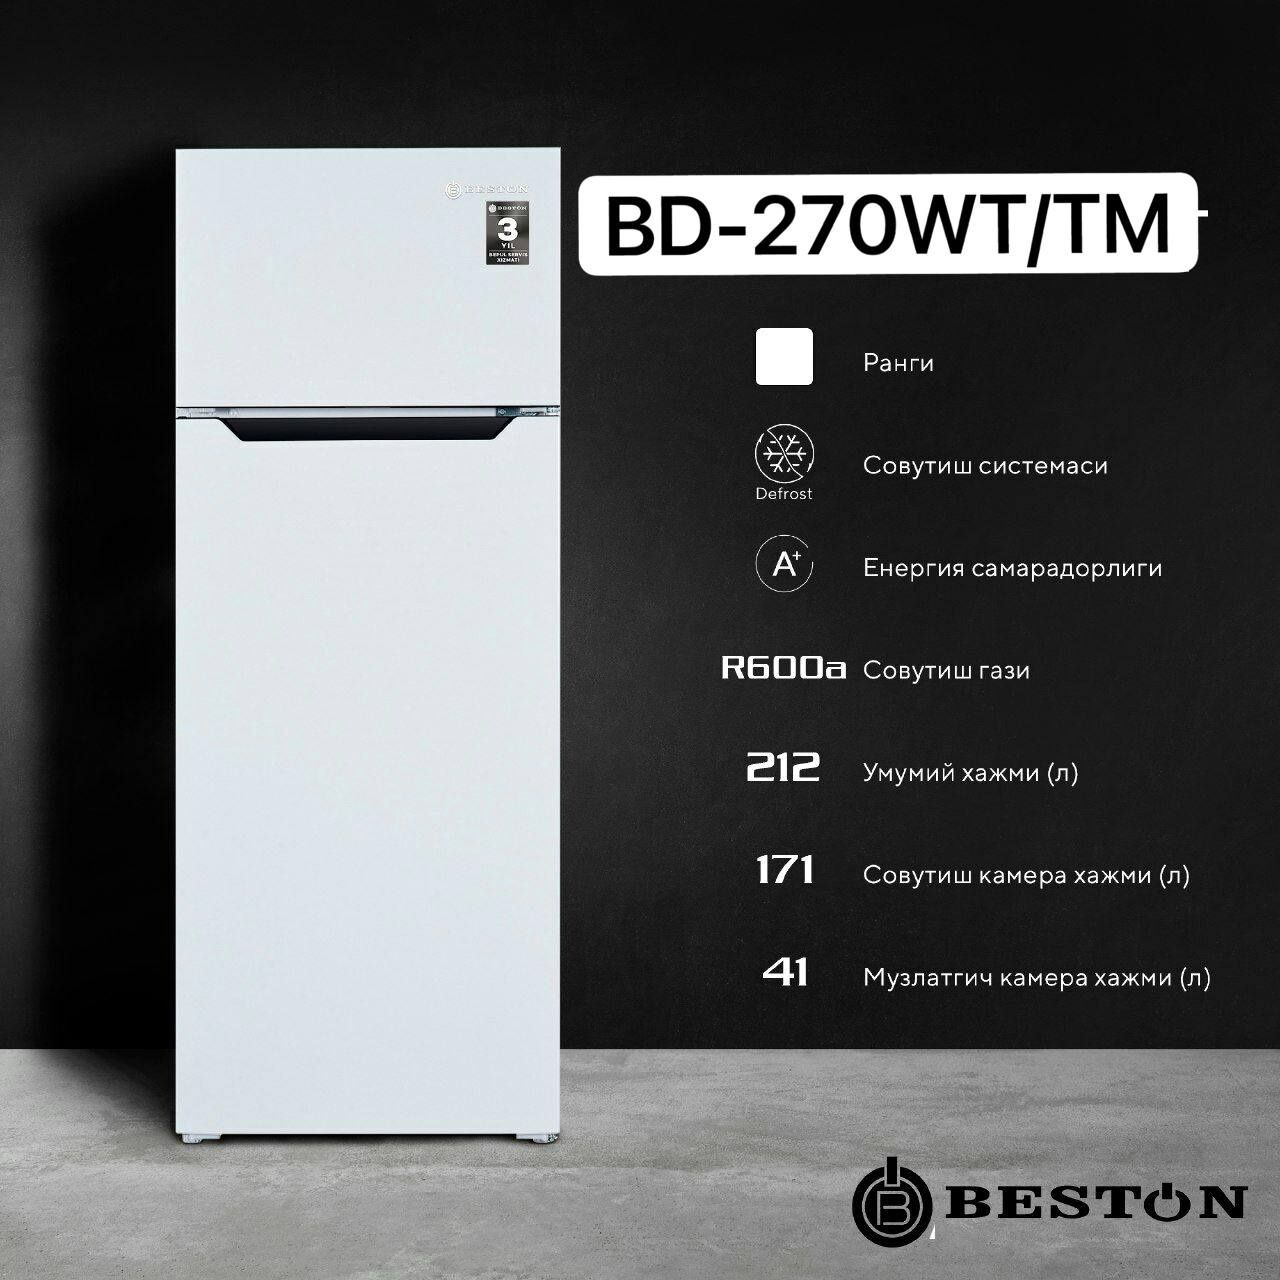 Мега скидки  Новый холодильник Beston De Frost